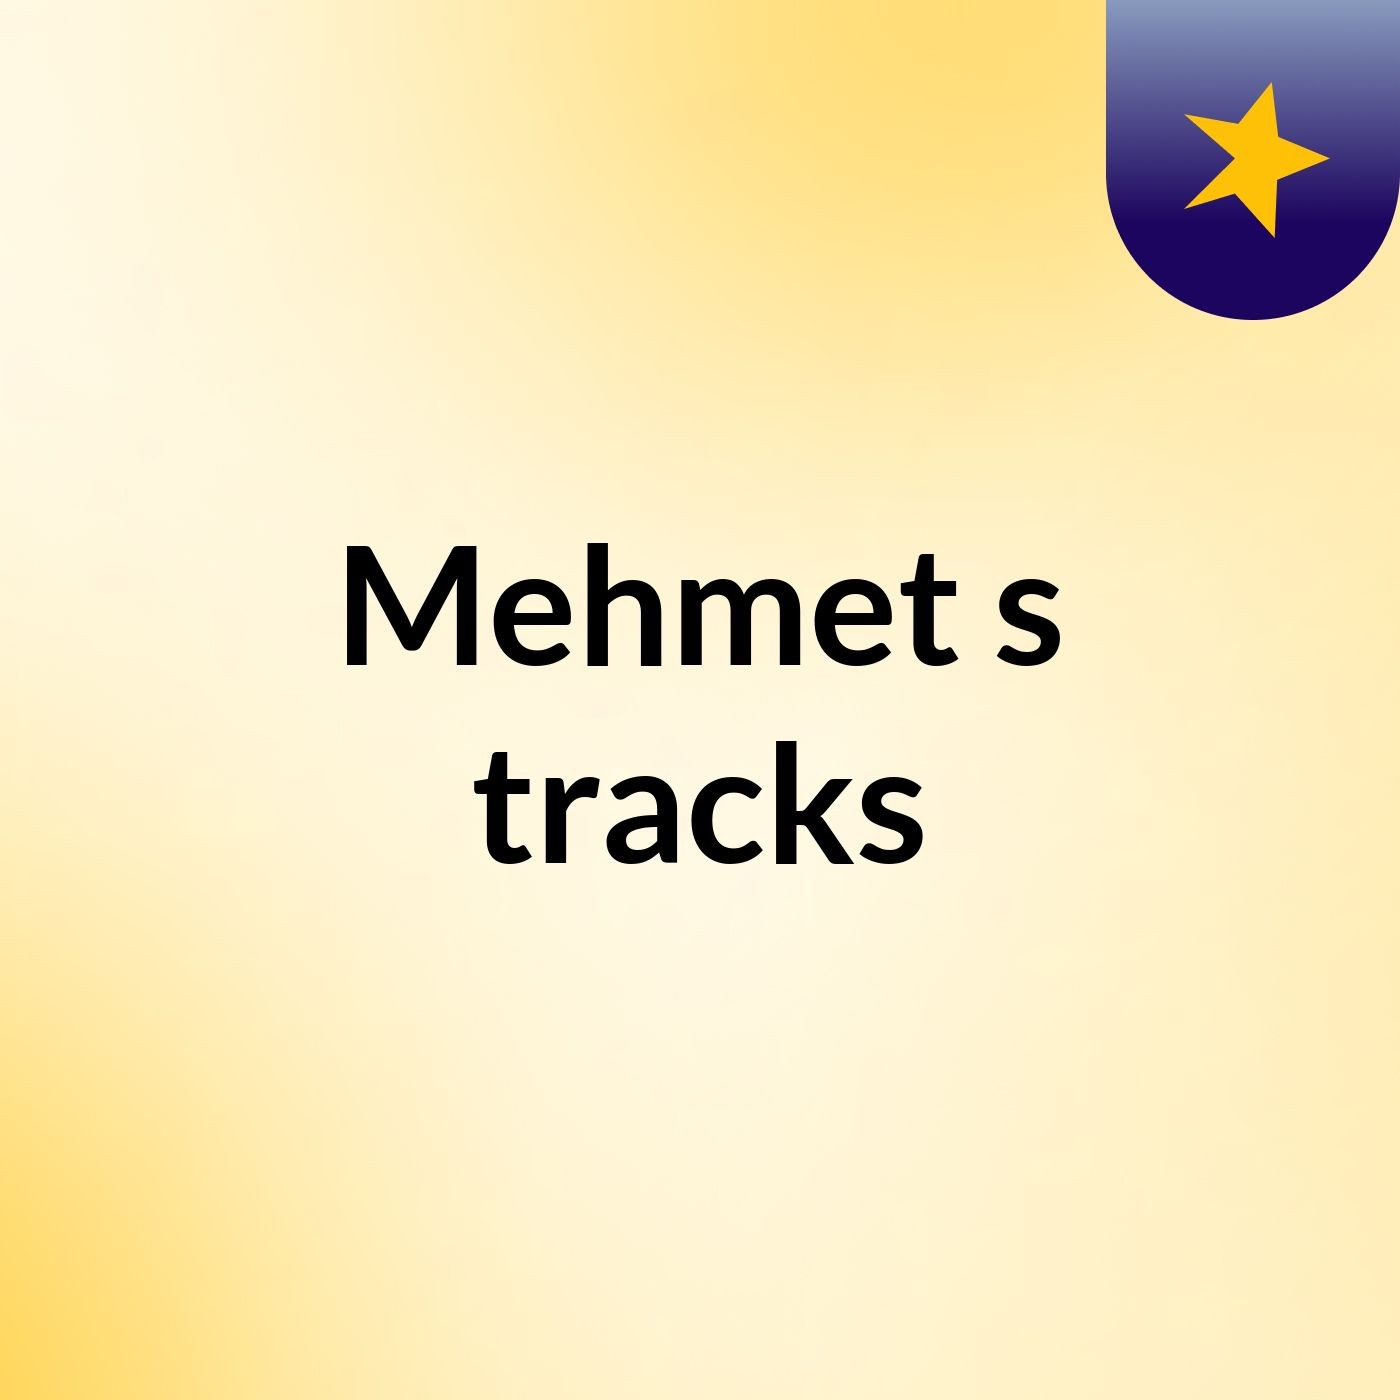 Mehmet's tracks